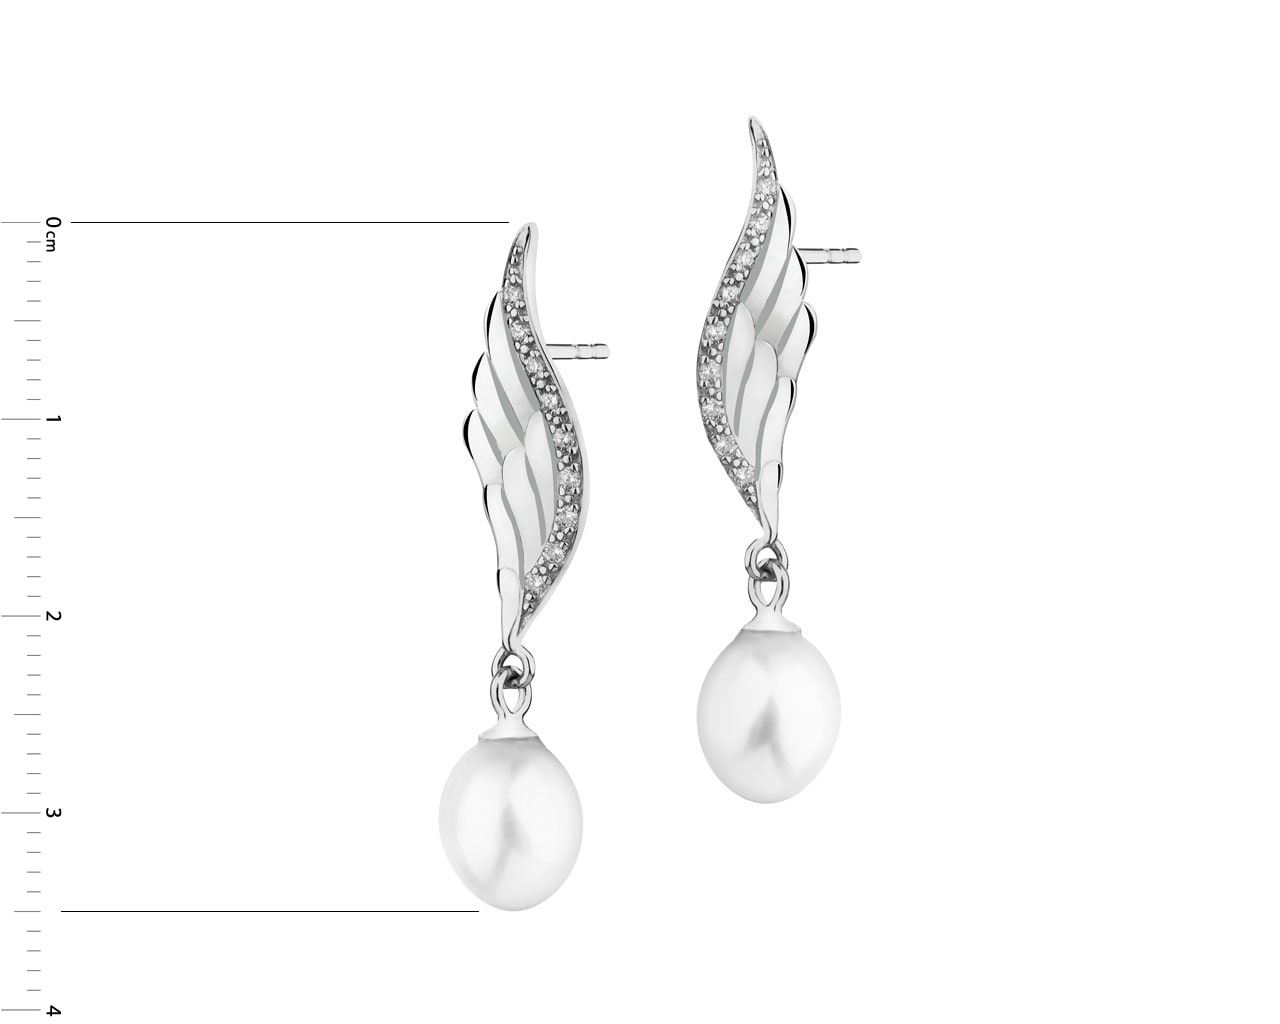 Kolczyki srebrne z perłami i cyrkoniami - skrzydła